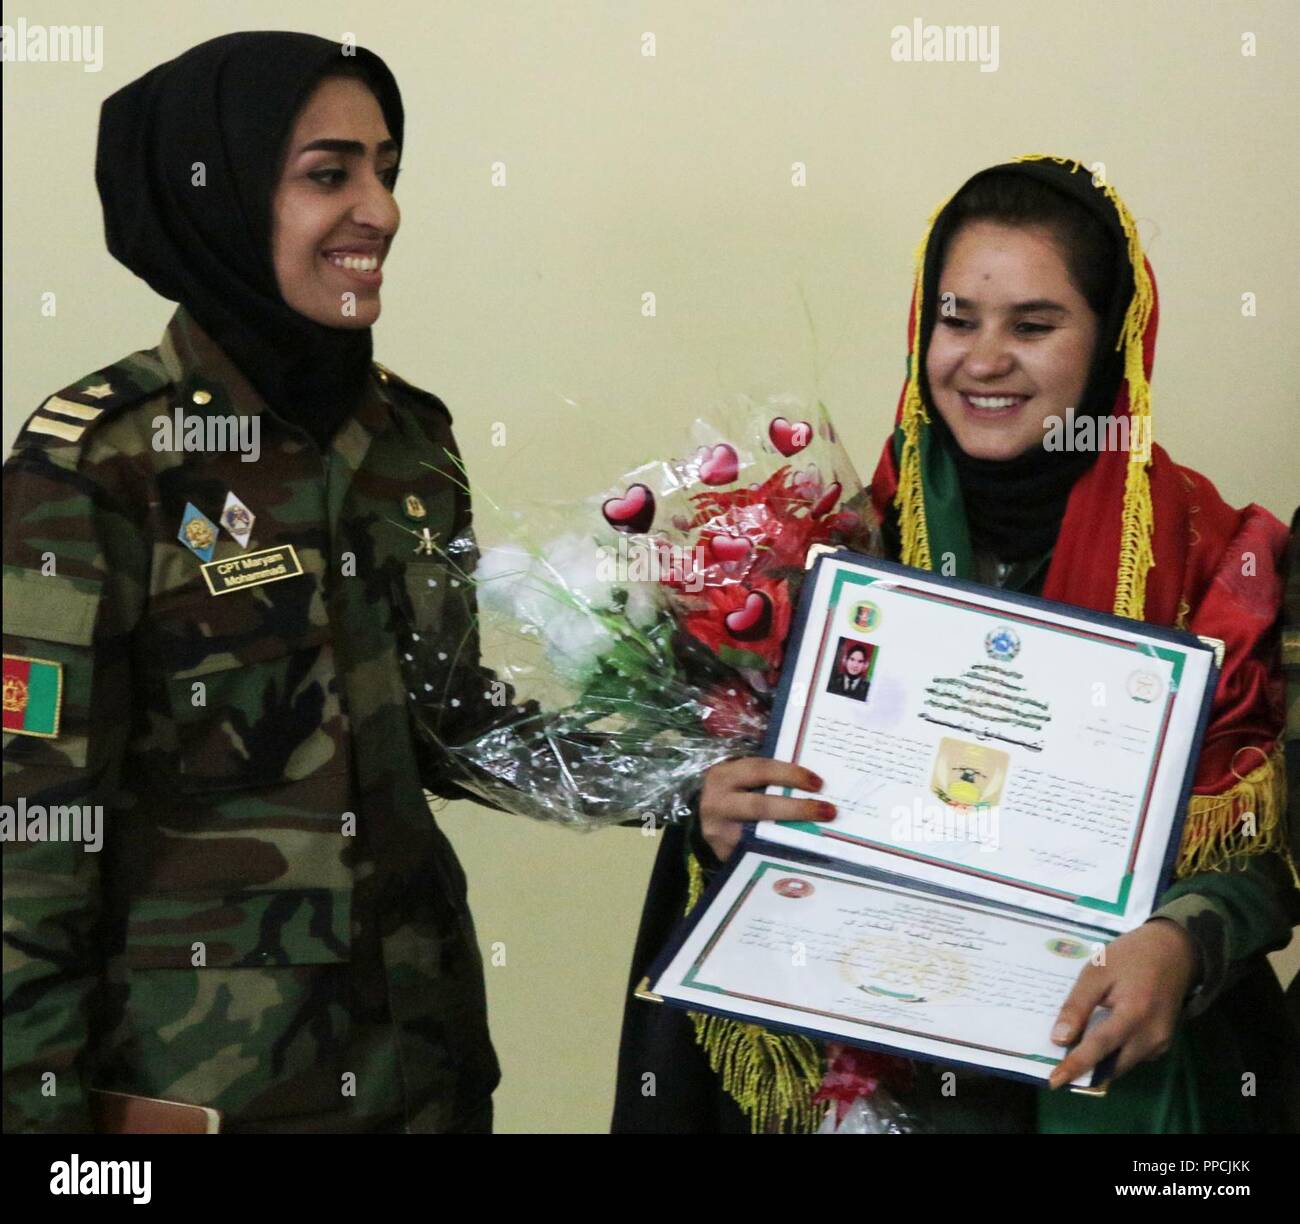 KABUL, Afghanistan (29 August 2018) - Sofia (rechts), eine nationale afghanische Armee Soldat, posiert für ein Foto nach Abschluss der afghanischen nationalen Armee Sergeant Major Akademie am Lager Qurgha, Afghanistan, August 29, 2018. Sie ordnete an zweiter Stelle aus den 80 Absolventen. Stockfoto